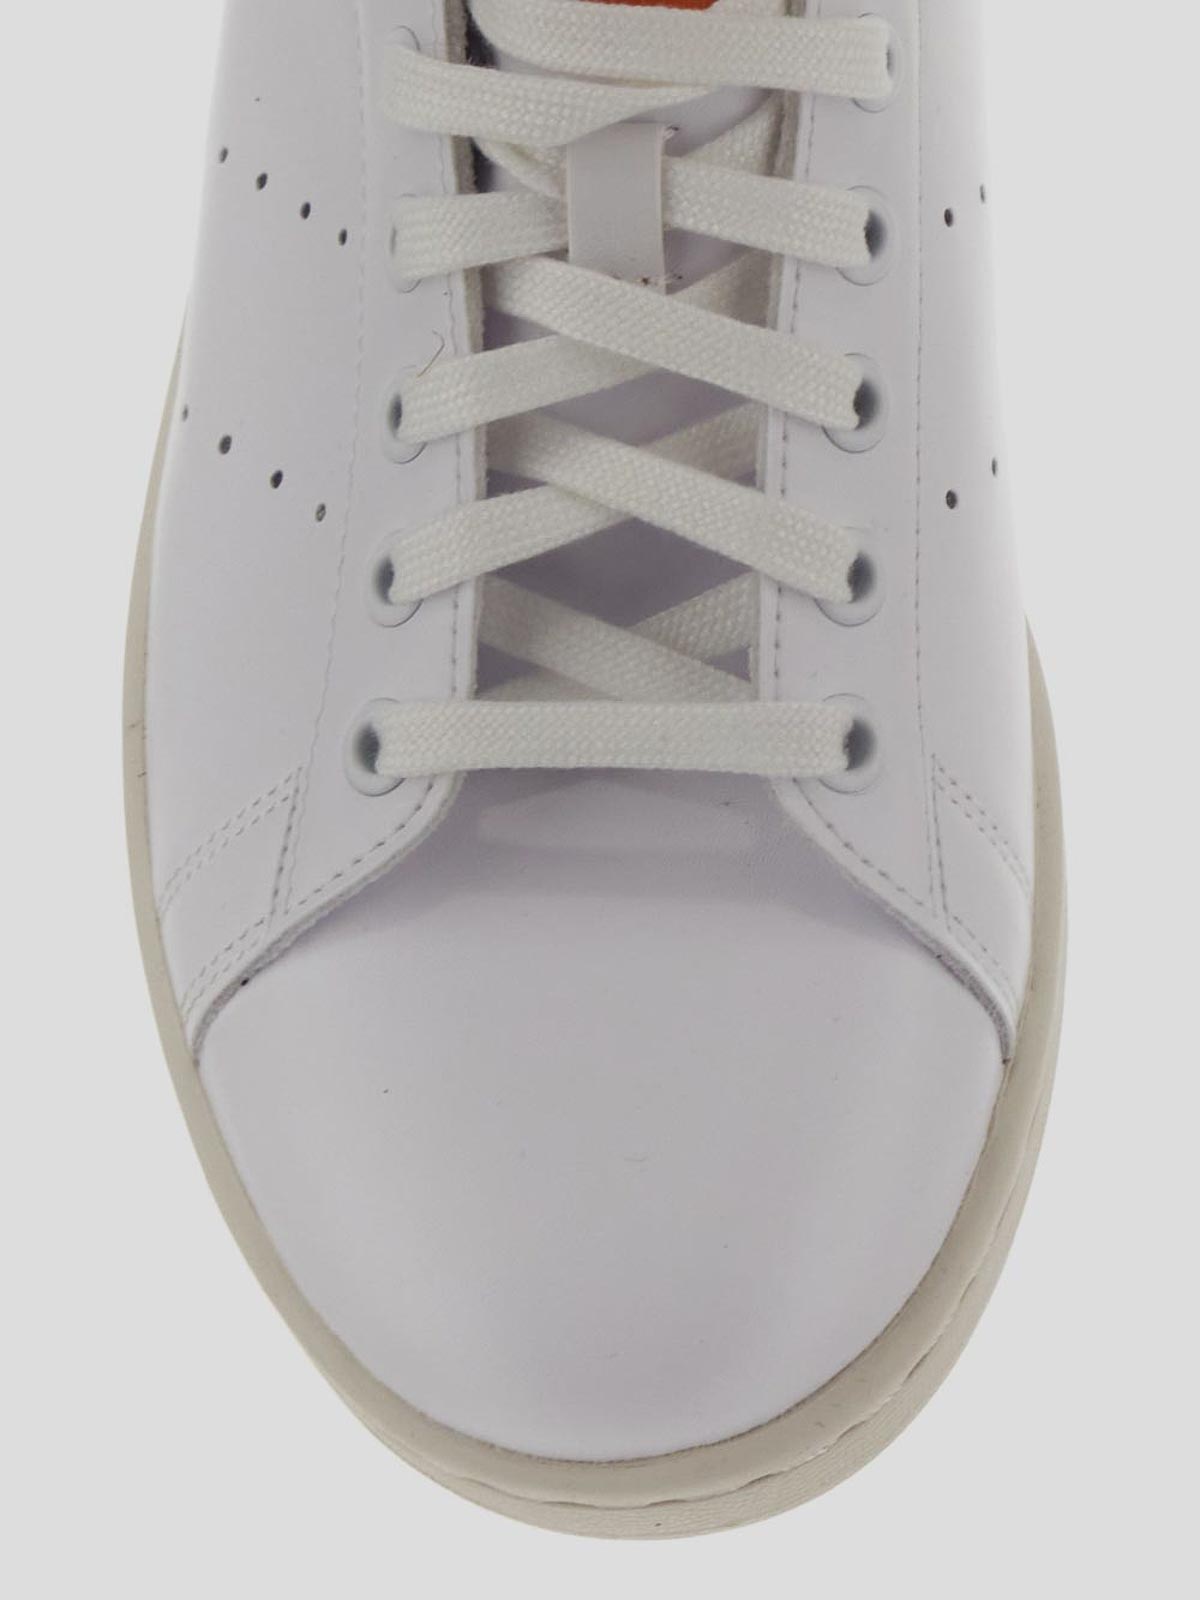 Shop Adidas Originals Zapatillas - Blanco In White